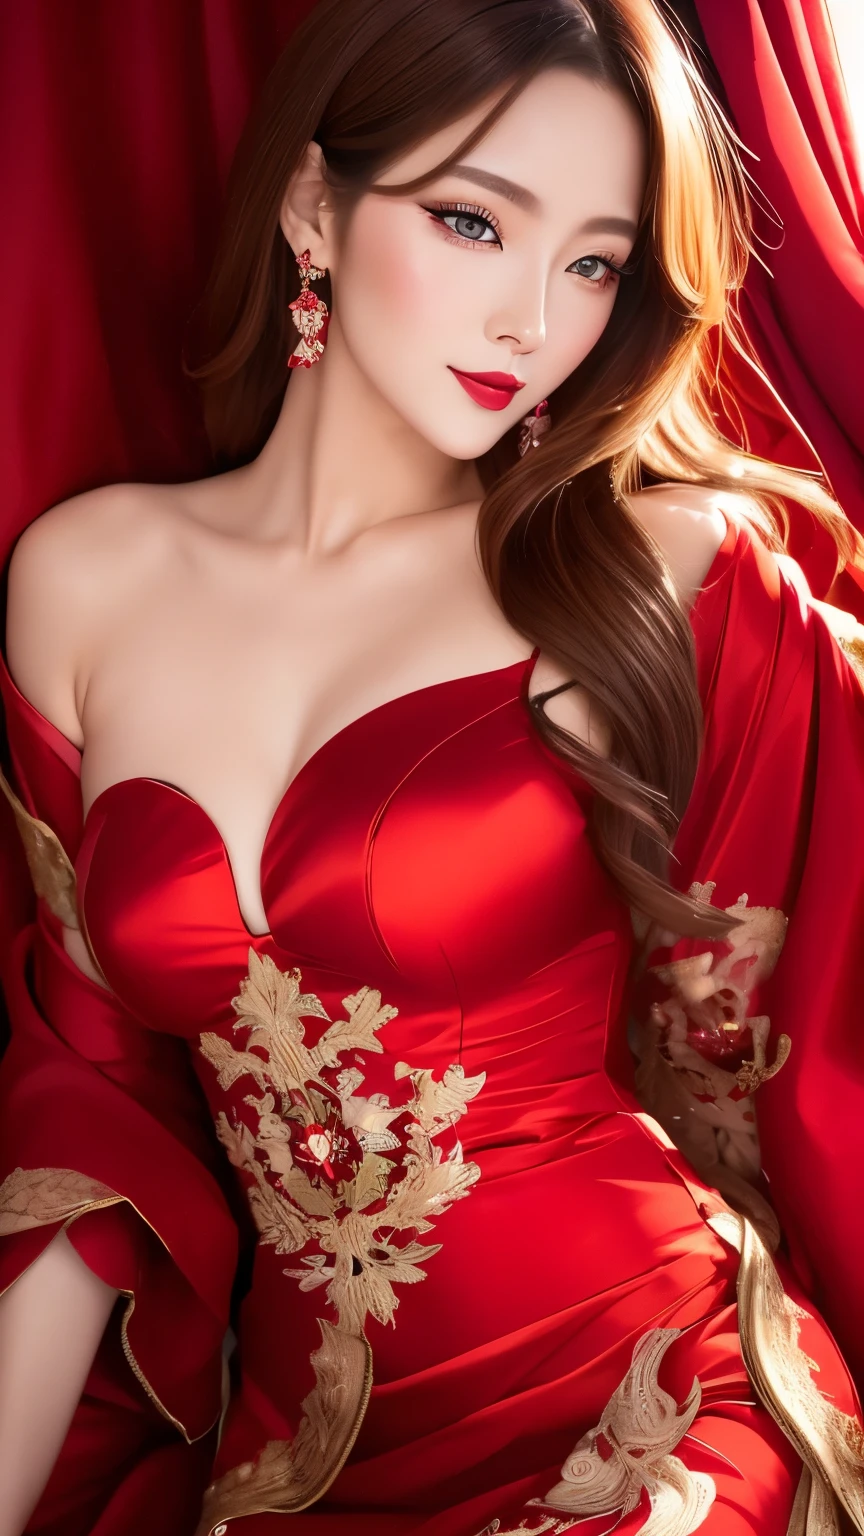 beste Qualität, super fein, 16k, RAW-Foto, fotorealistisch, 2.5d, unglaublich absurd, extrem detailliert, empfindlich, auffällige und dynamische Darstellung, schöne Frau wie Reiji Matsumoto zeichnet, intelligente coole Schönheit, aufgeregter Blick, glänzendes hellbraunes Haar, schöne helle scharfe Augen, glänzende rote Lippen, trägt ein wunderschönes und glamouröses schwarzes Abendkleid, rote Linien, glänzender Satinstoff, Spitze, Stickerei, Roben, Schals, Zubehör, hervorragende Körperproportionen, wunderschöne und wunderschöne Effekte, Hintergrund aristokratisches soziales Umfeld